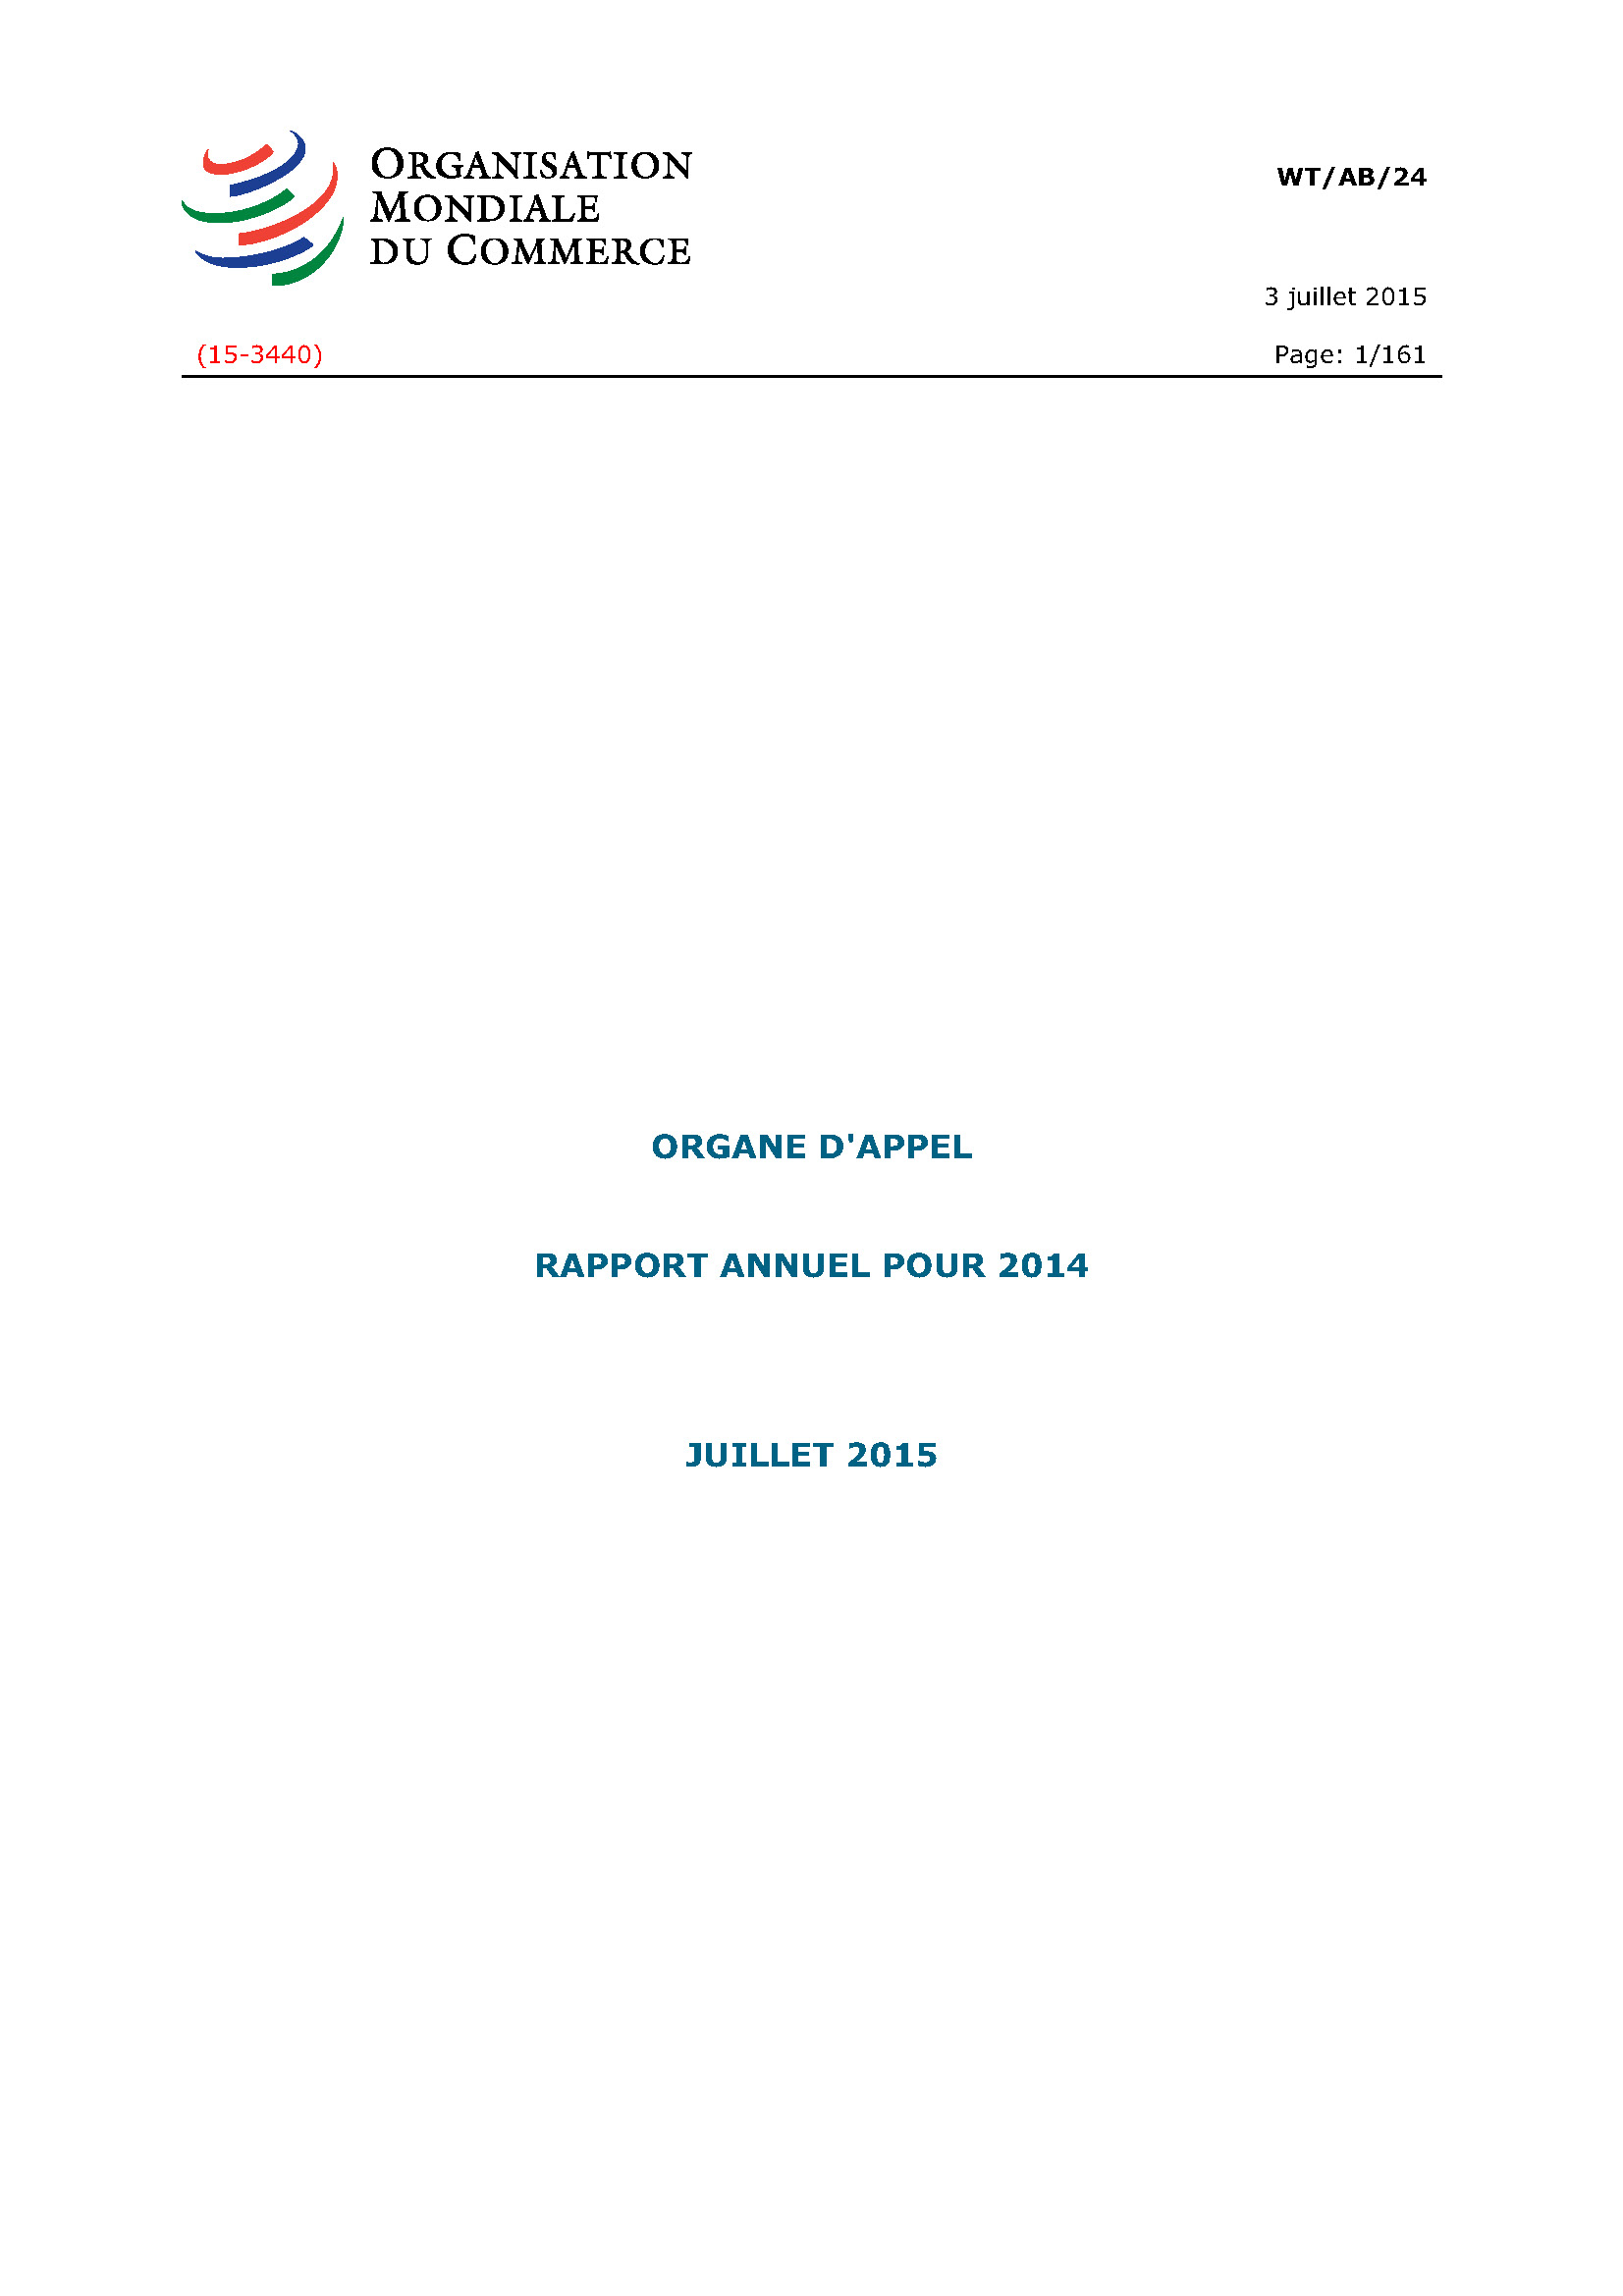 image of Rapport annuel de l’organe d’appel pour 2014